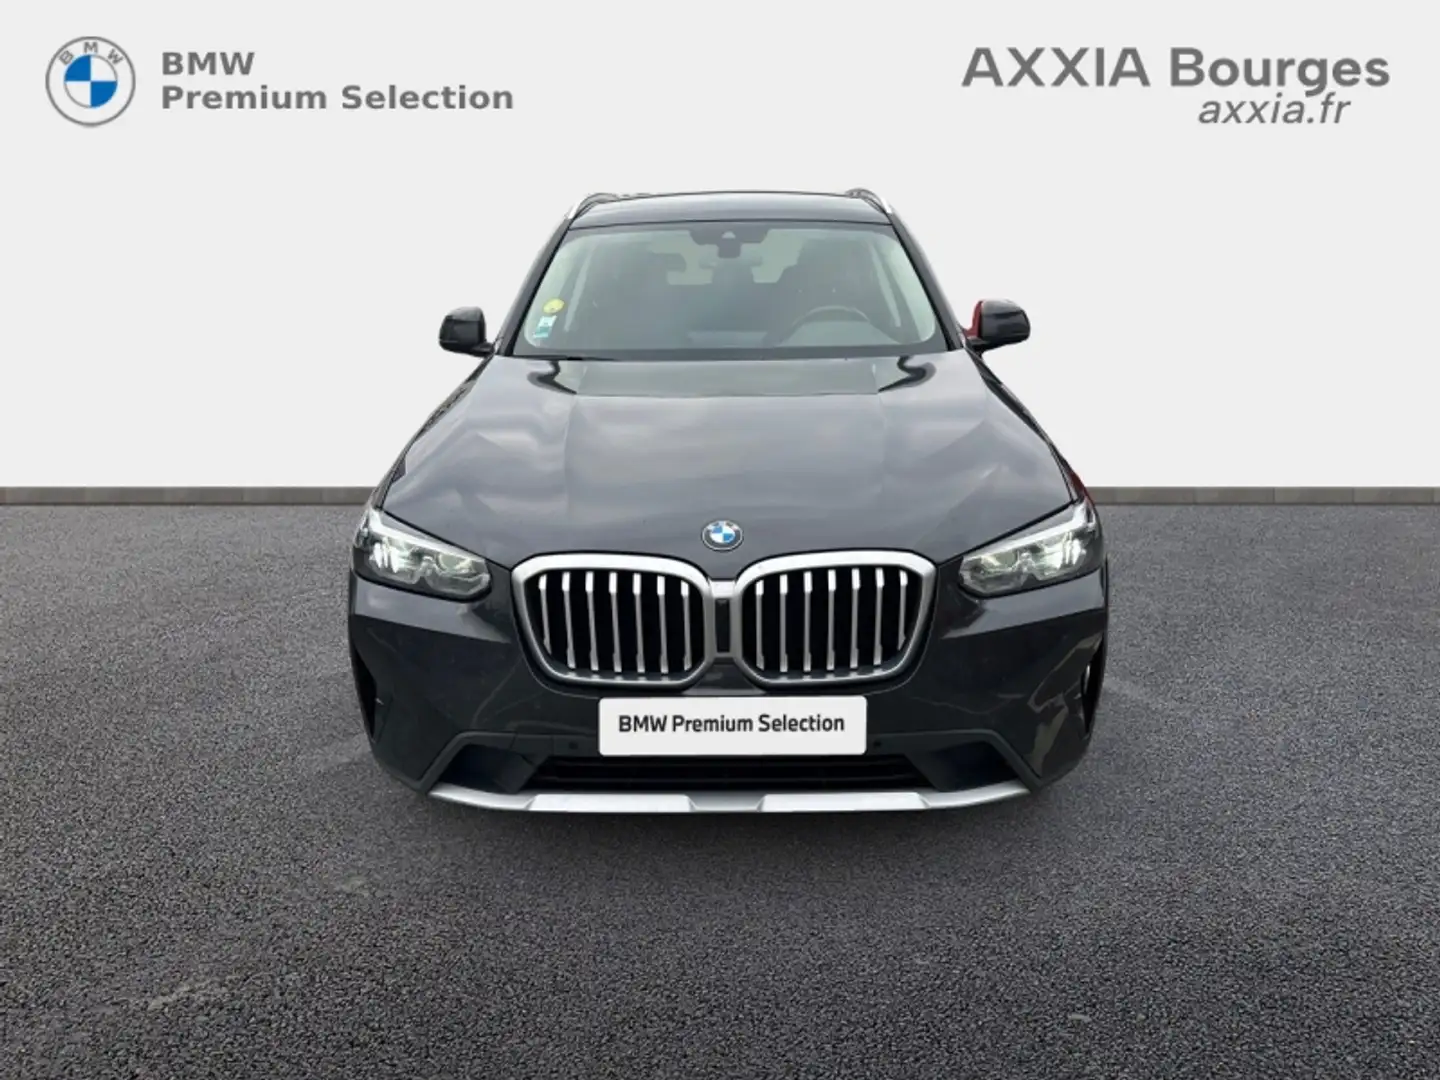 BMW X3 sDrive18d 150ch Business Design - 2